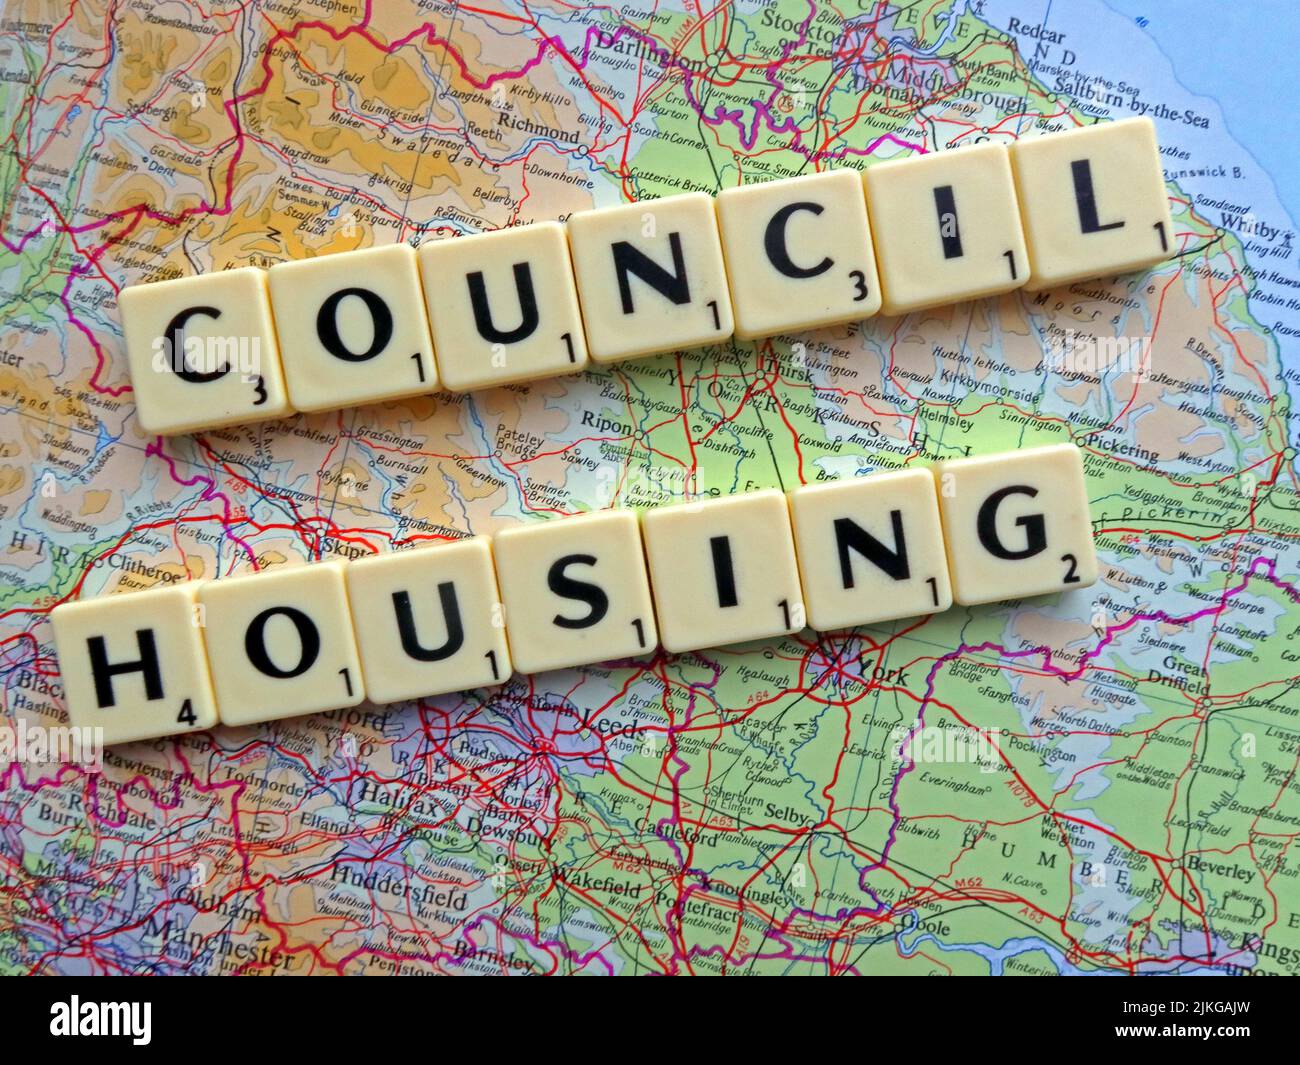 Il Consiglio Housing ha scritto in lettere Scrabble su una mappa dell'Inghilterra, una politica già respinta dalla Scozia e dal Galles assembles Foto Stock